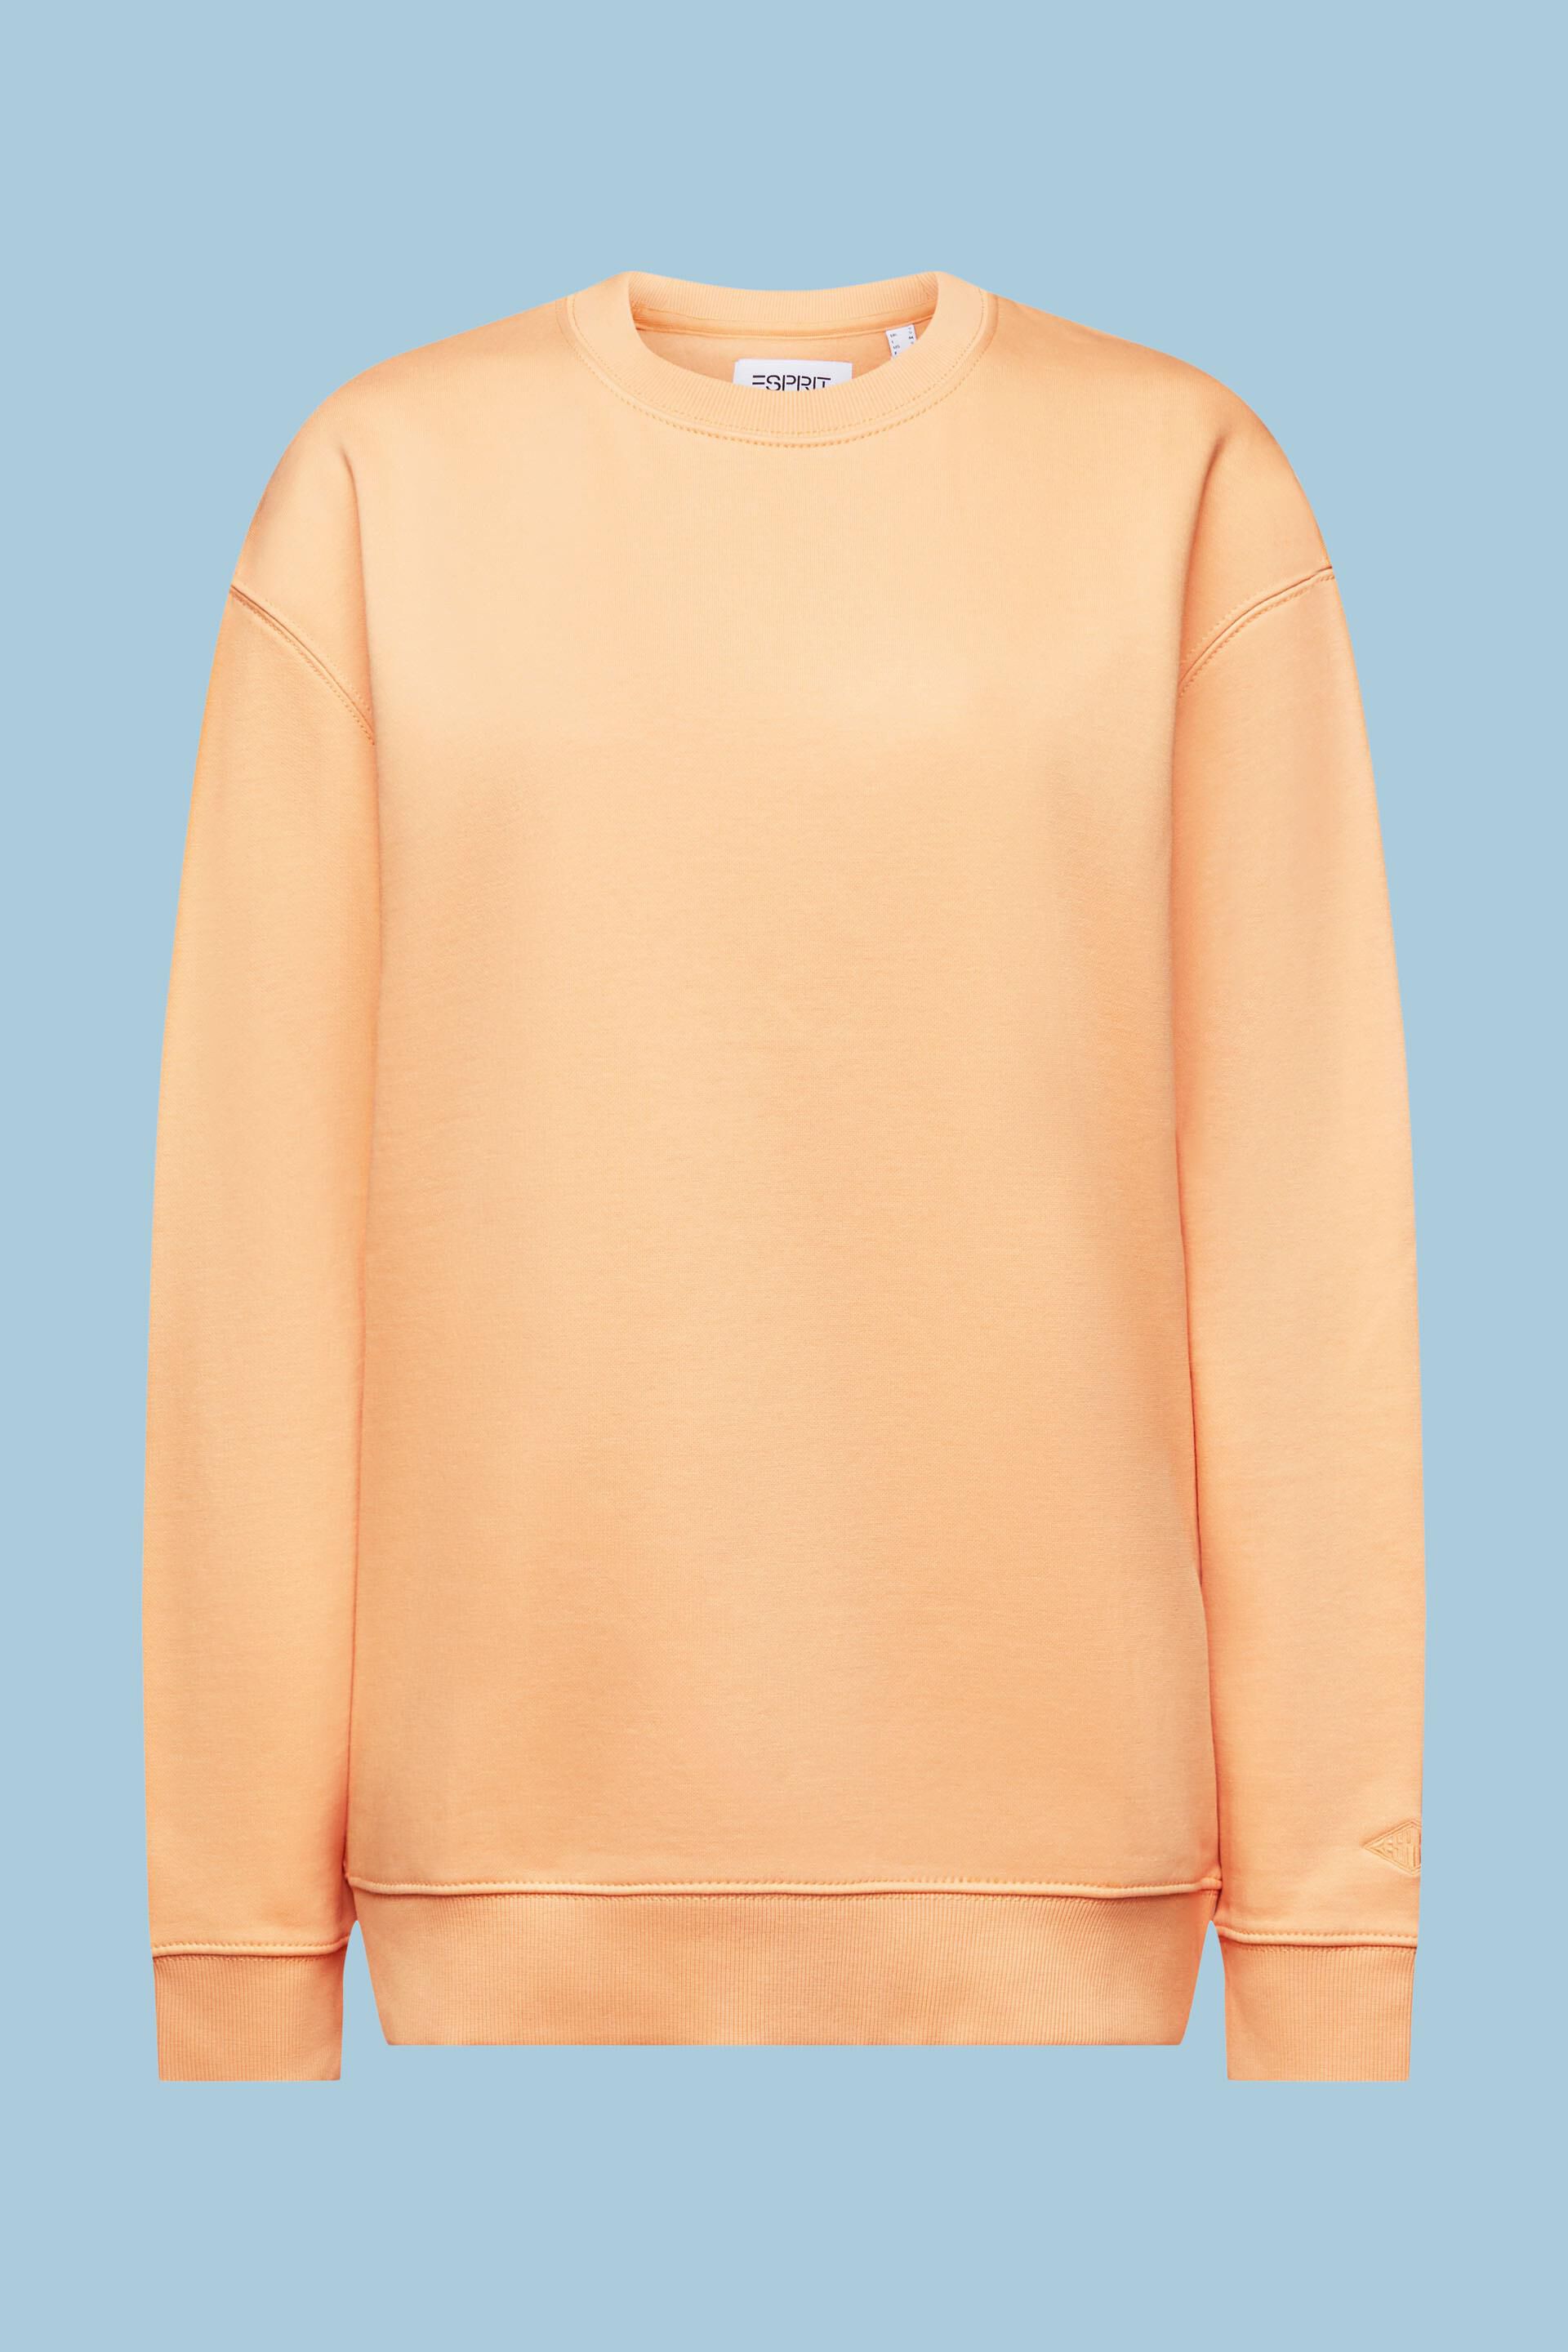 Cotton Blend Pullover our ESPRIT Sweatshirt at online shop 